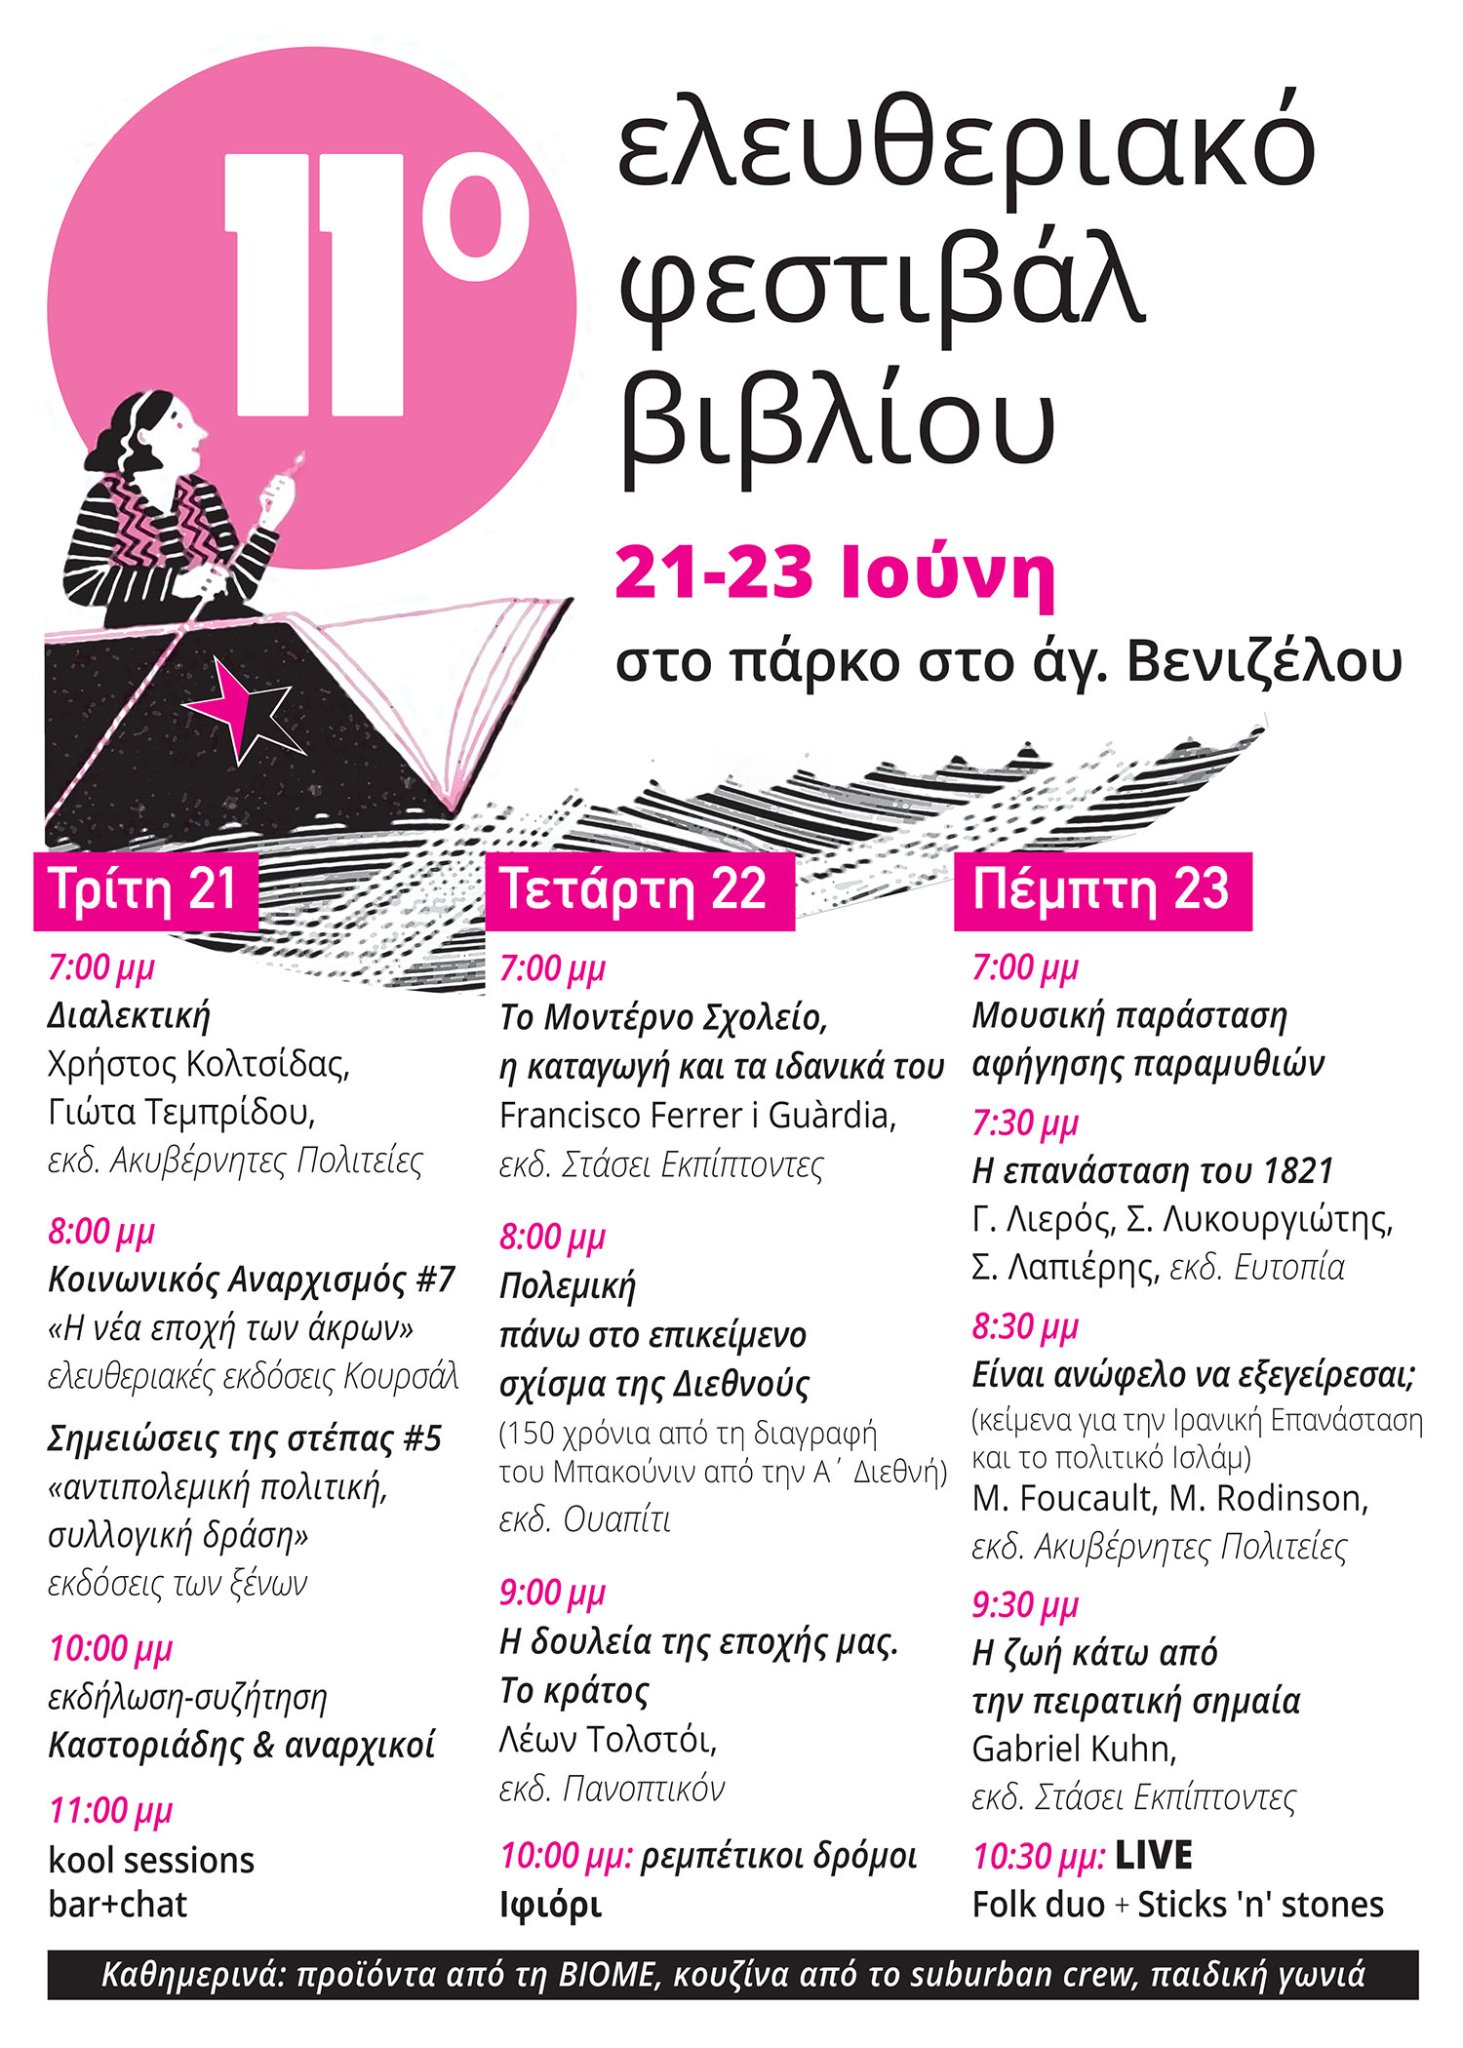 11ο Ελευθεριακό Φεστιβάλ Βιβλίου Θεσσαλονίκης